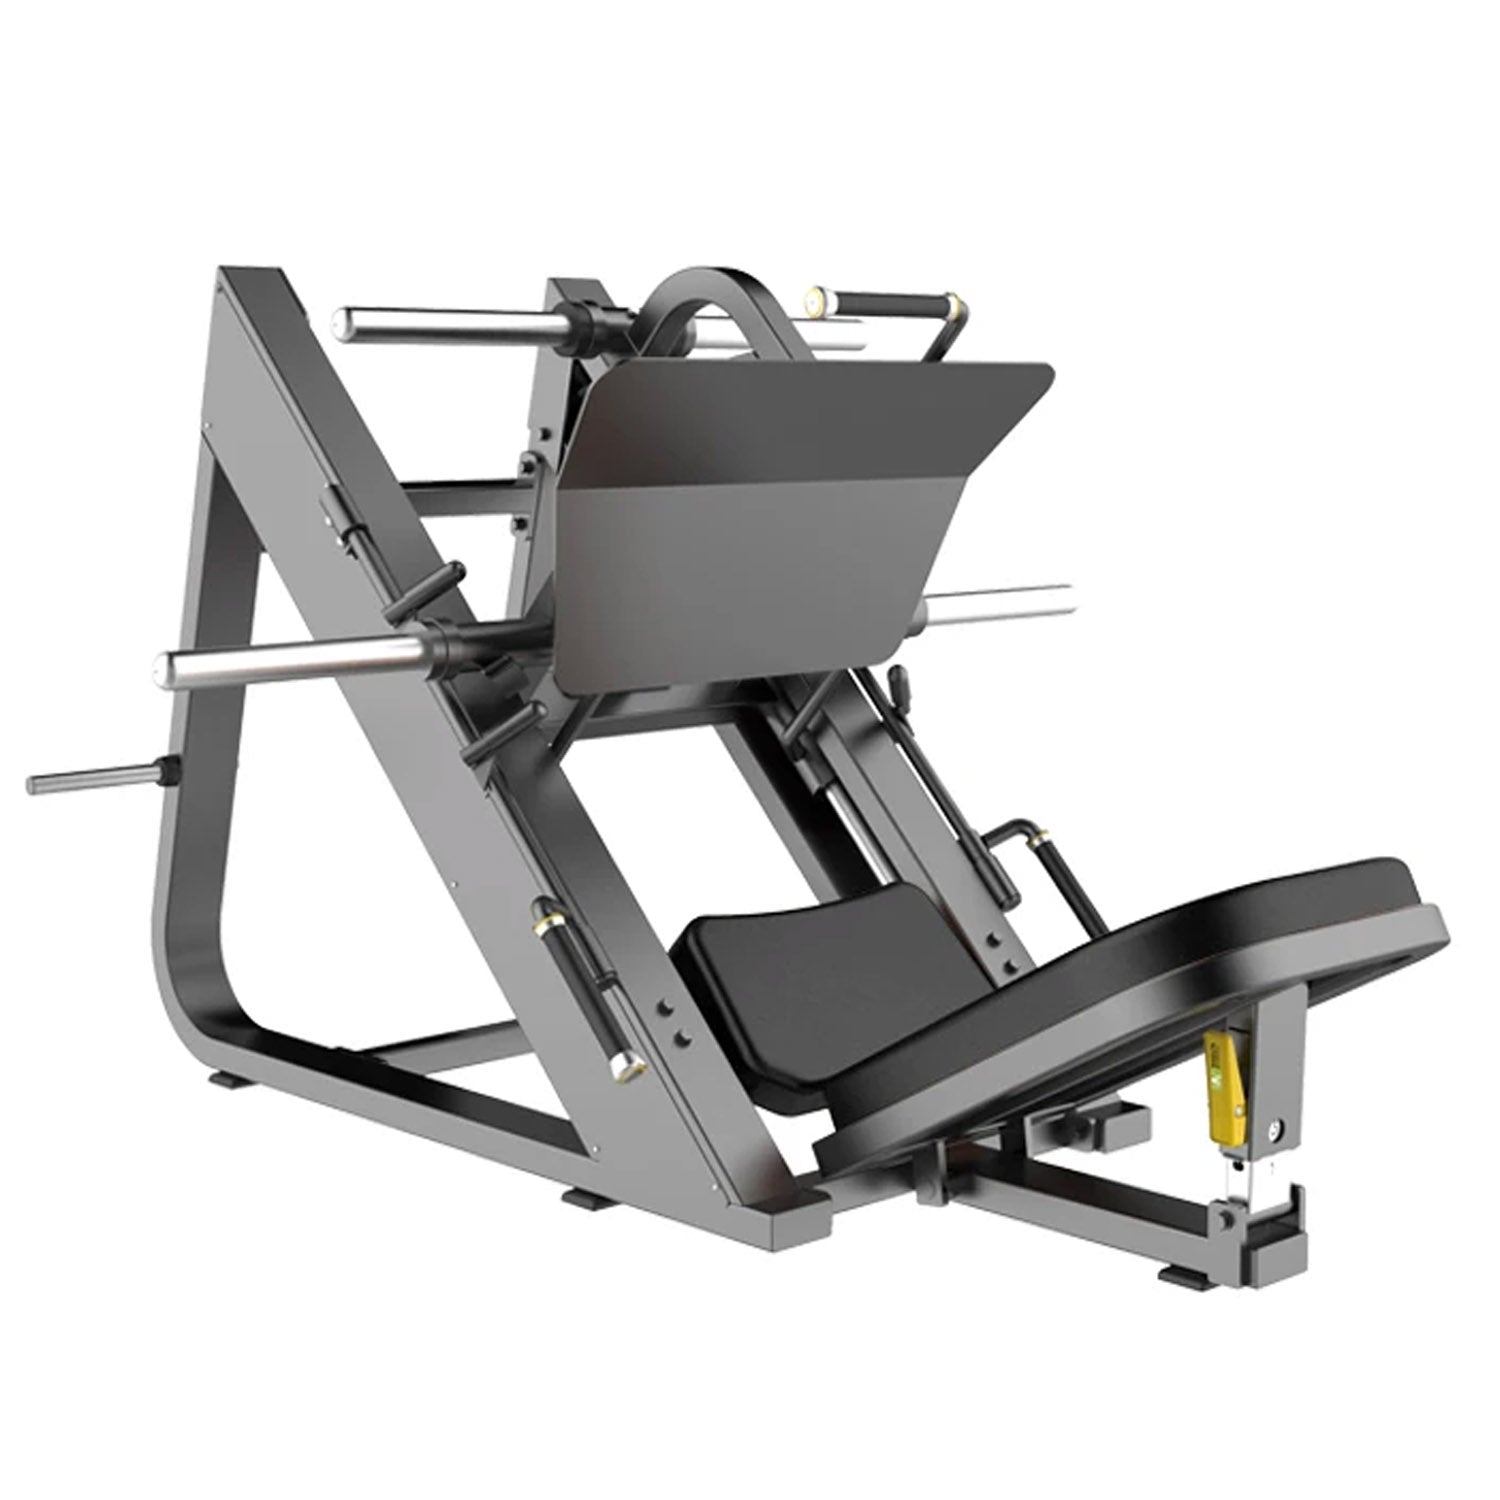 Commercial leg press 45 degrees BGTB56 Gymnetic – Body Gym